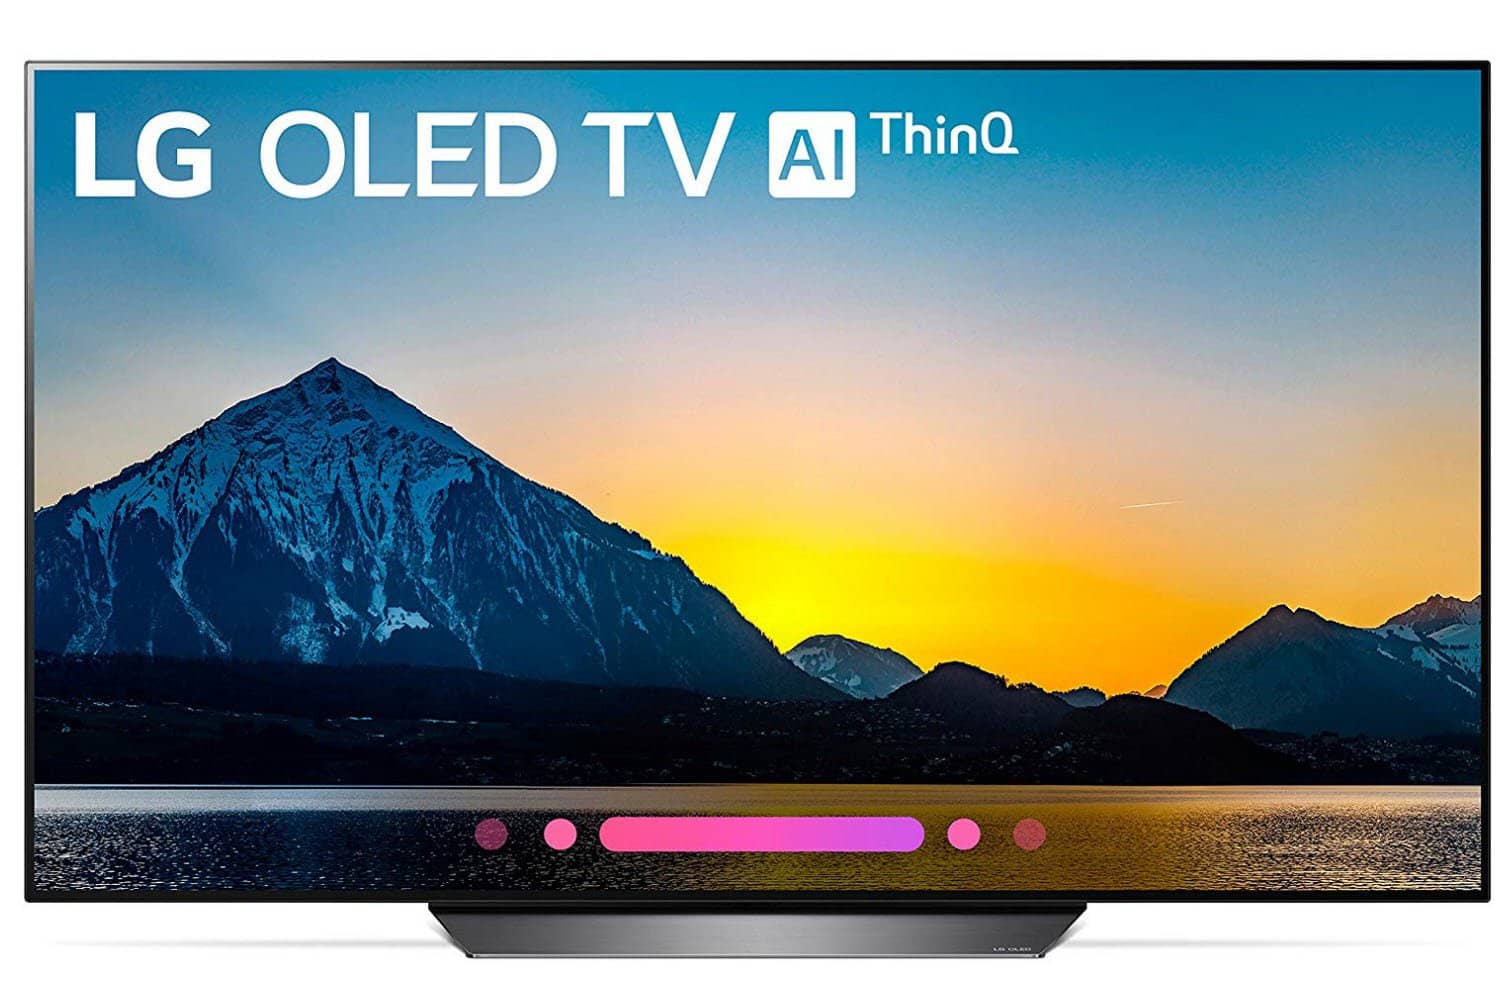 LG 65 inches 4K Smart OLED TV OLED65B8PUA (2018)